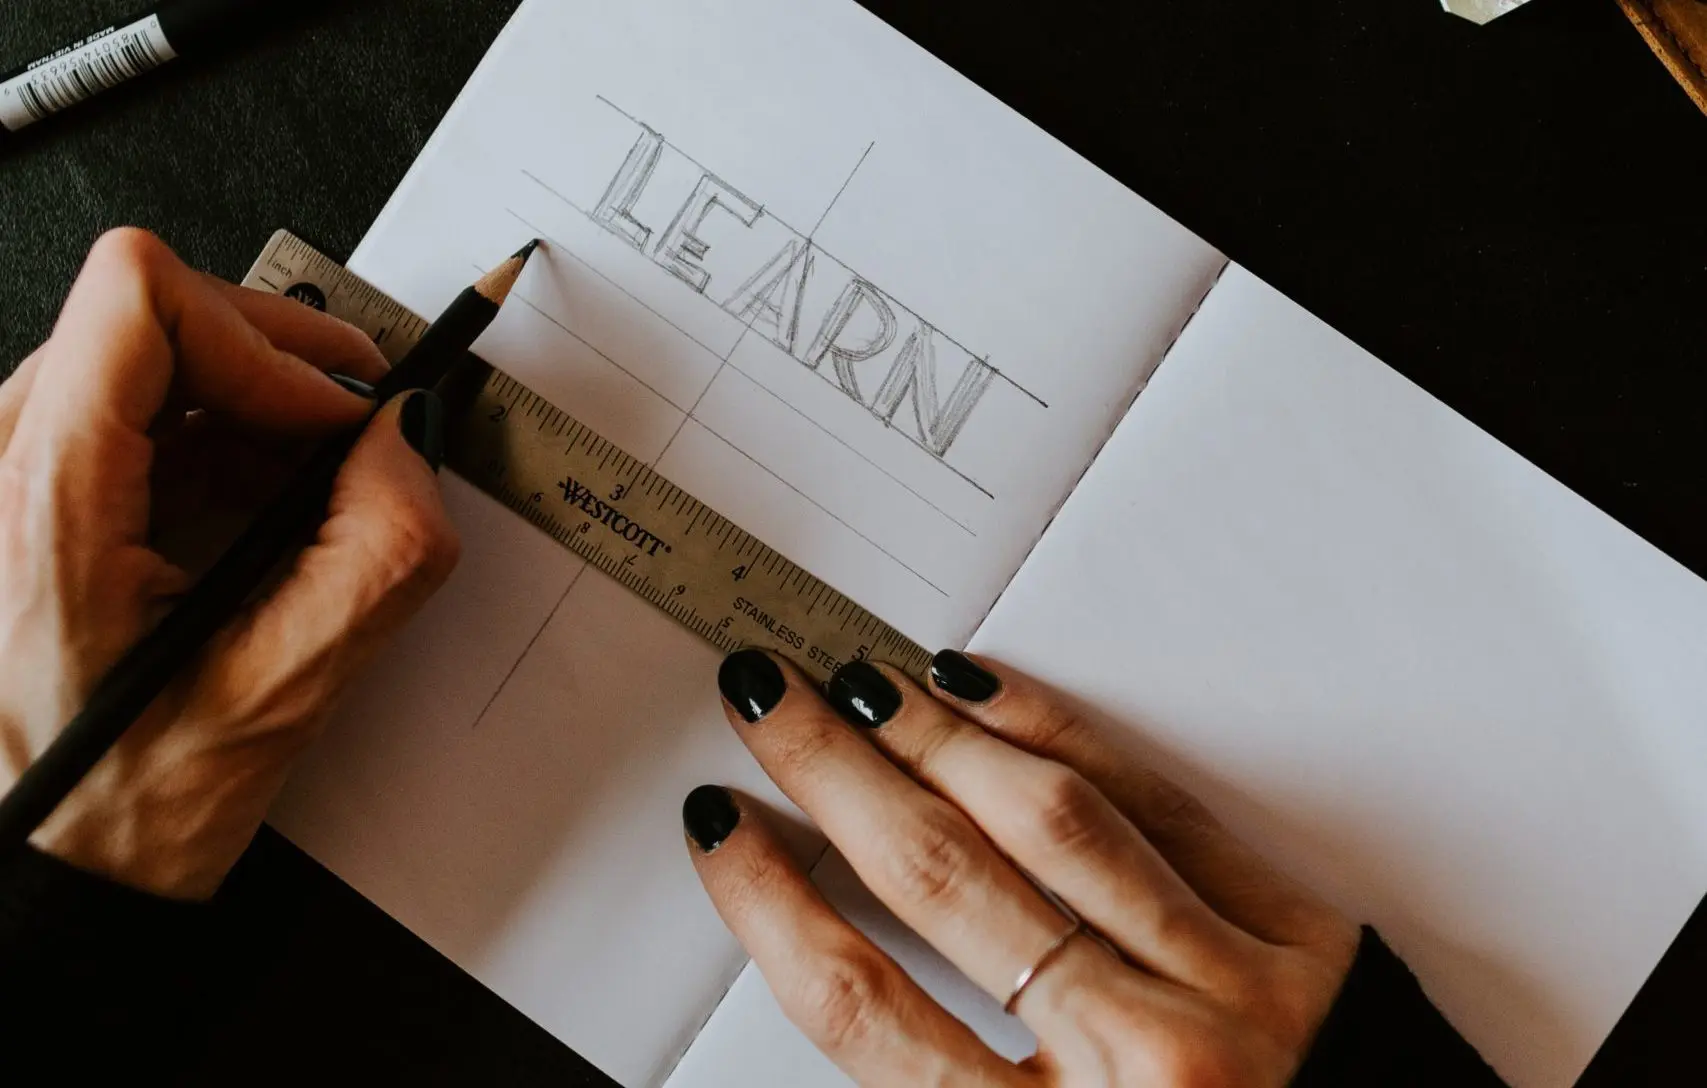 Mujer escribiendo en un cuaderno la palabra learn con una regla y un lápiz